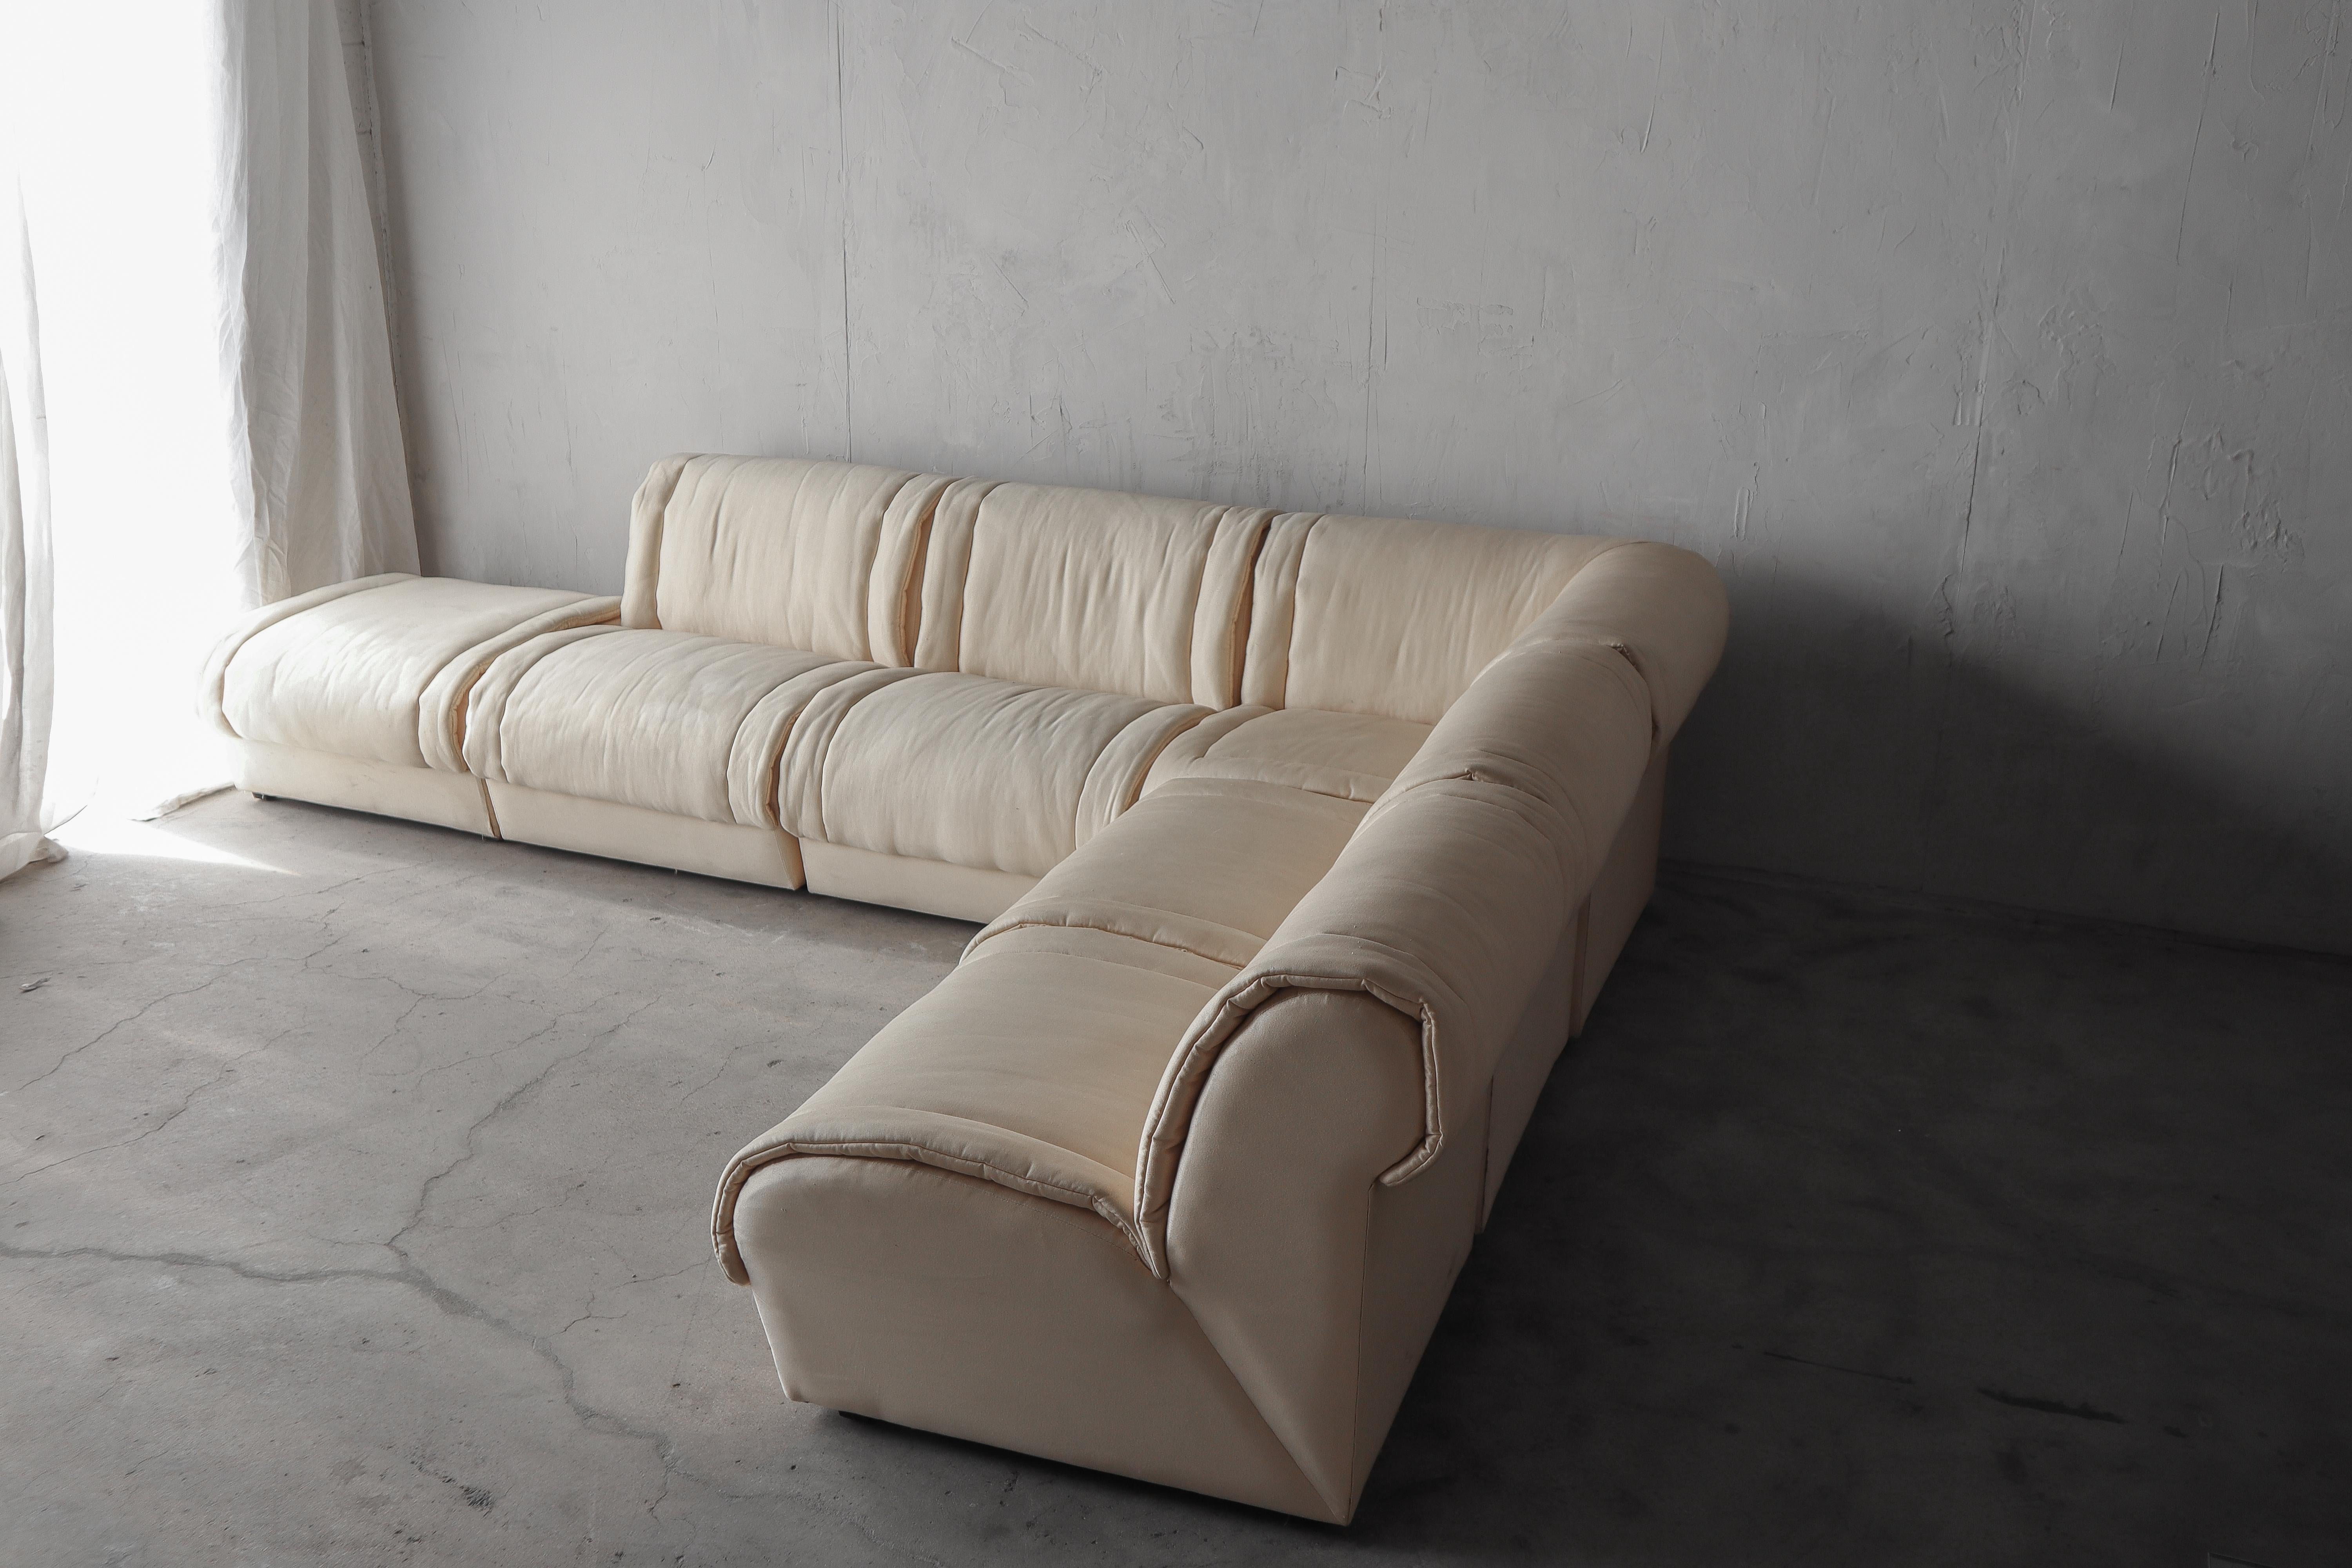 Tolles 6-teiliges modulares Post Modern Sektionssofa, das Rolf Benz zugeschrieben wird. Ein wunderschönes Sofa, das einen großen Eindruck hinterlässt.

Das Sofa wird so verkauft, wie es gefunden wurde. Es muss neu gepolstert werden, aber der